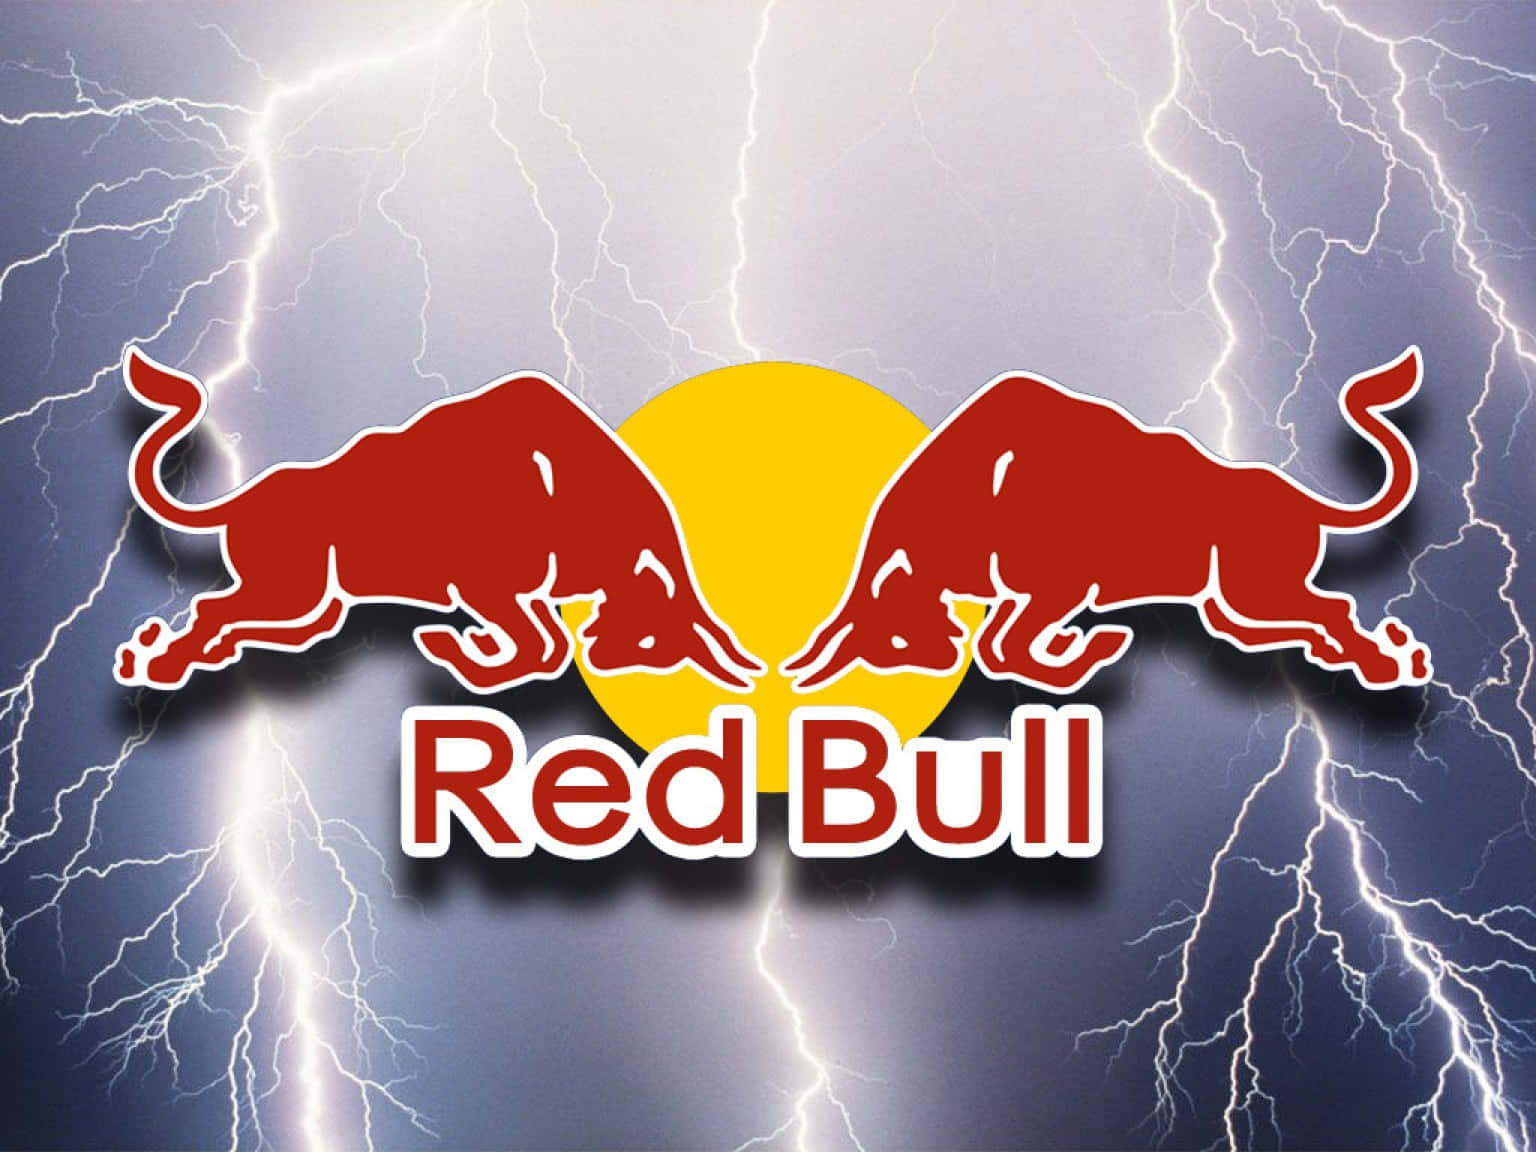 Enkraftig Energiexplosion - Red Bull!